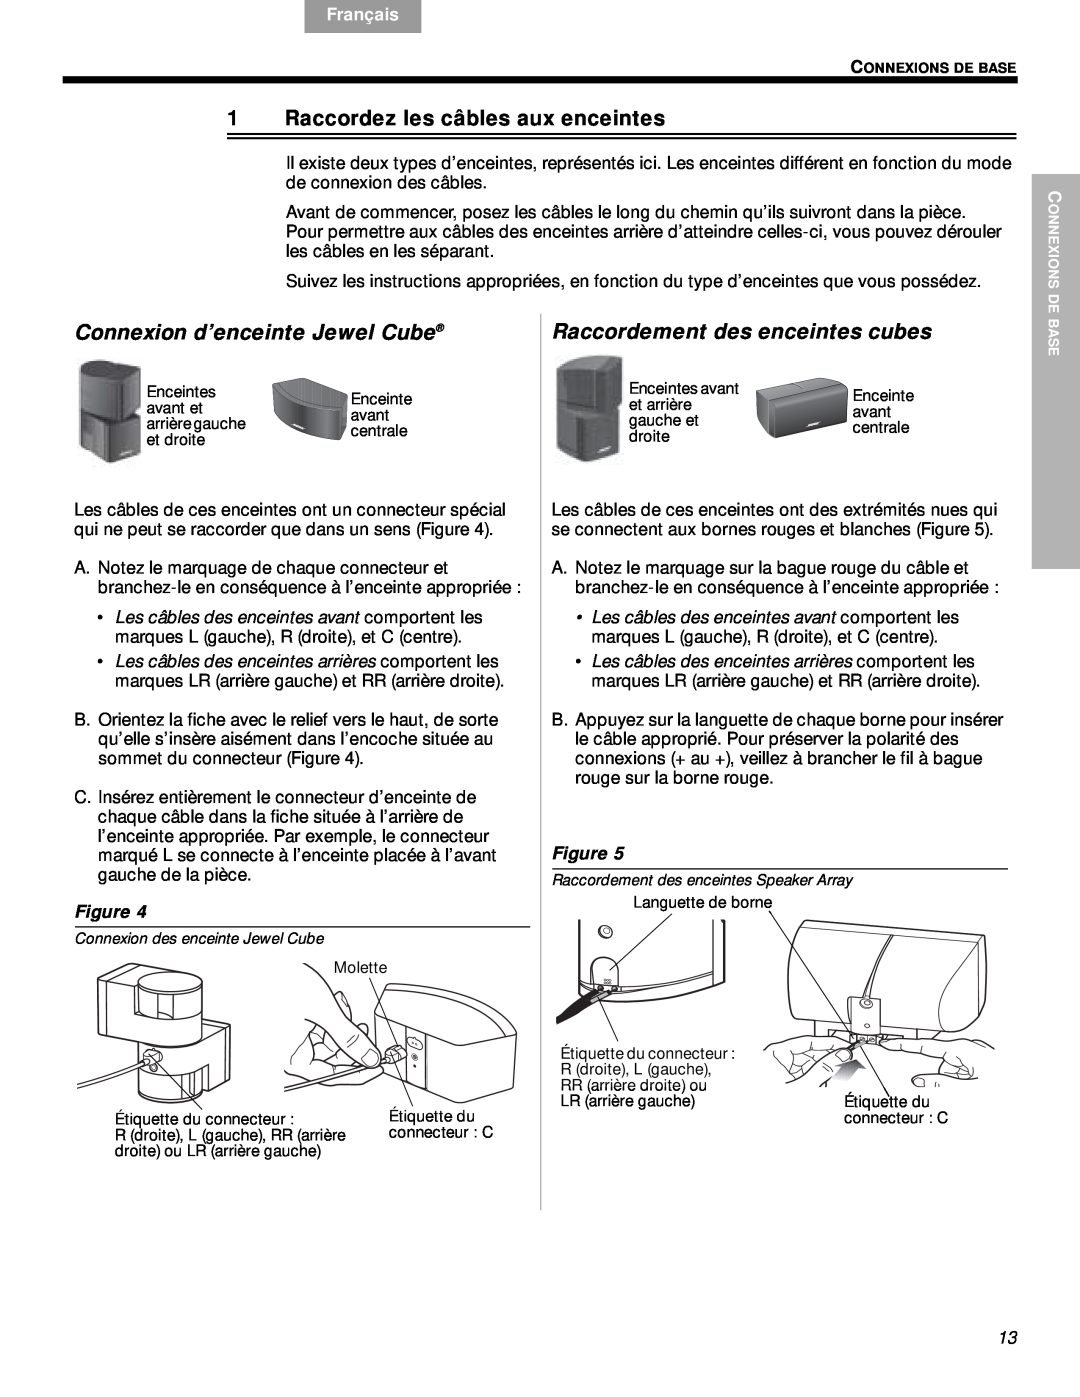 Bose VS-2 Raccordez les câbles aux enceintes, Connexion d’enceinte Jewel Cube, Raccordement des enceintes cubes, English 